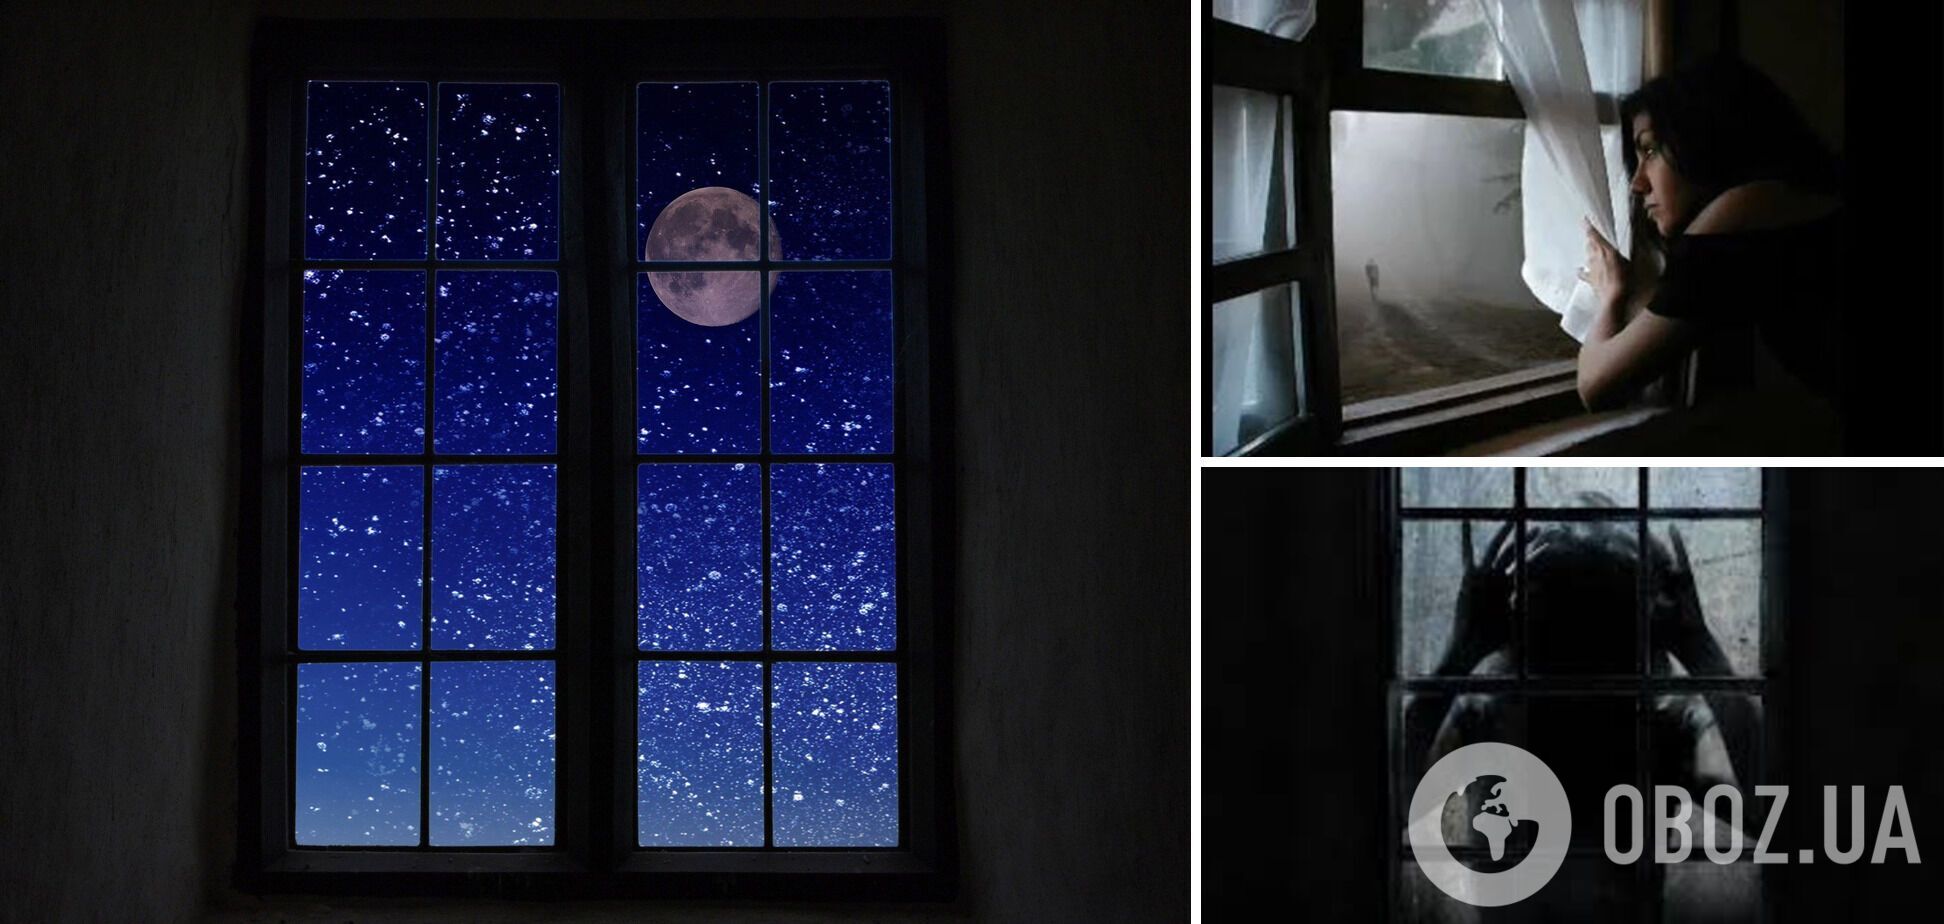 Чому не можна дивитися у вікно вночі: як пояснювали забобон пращури